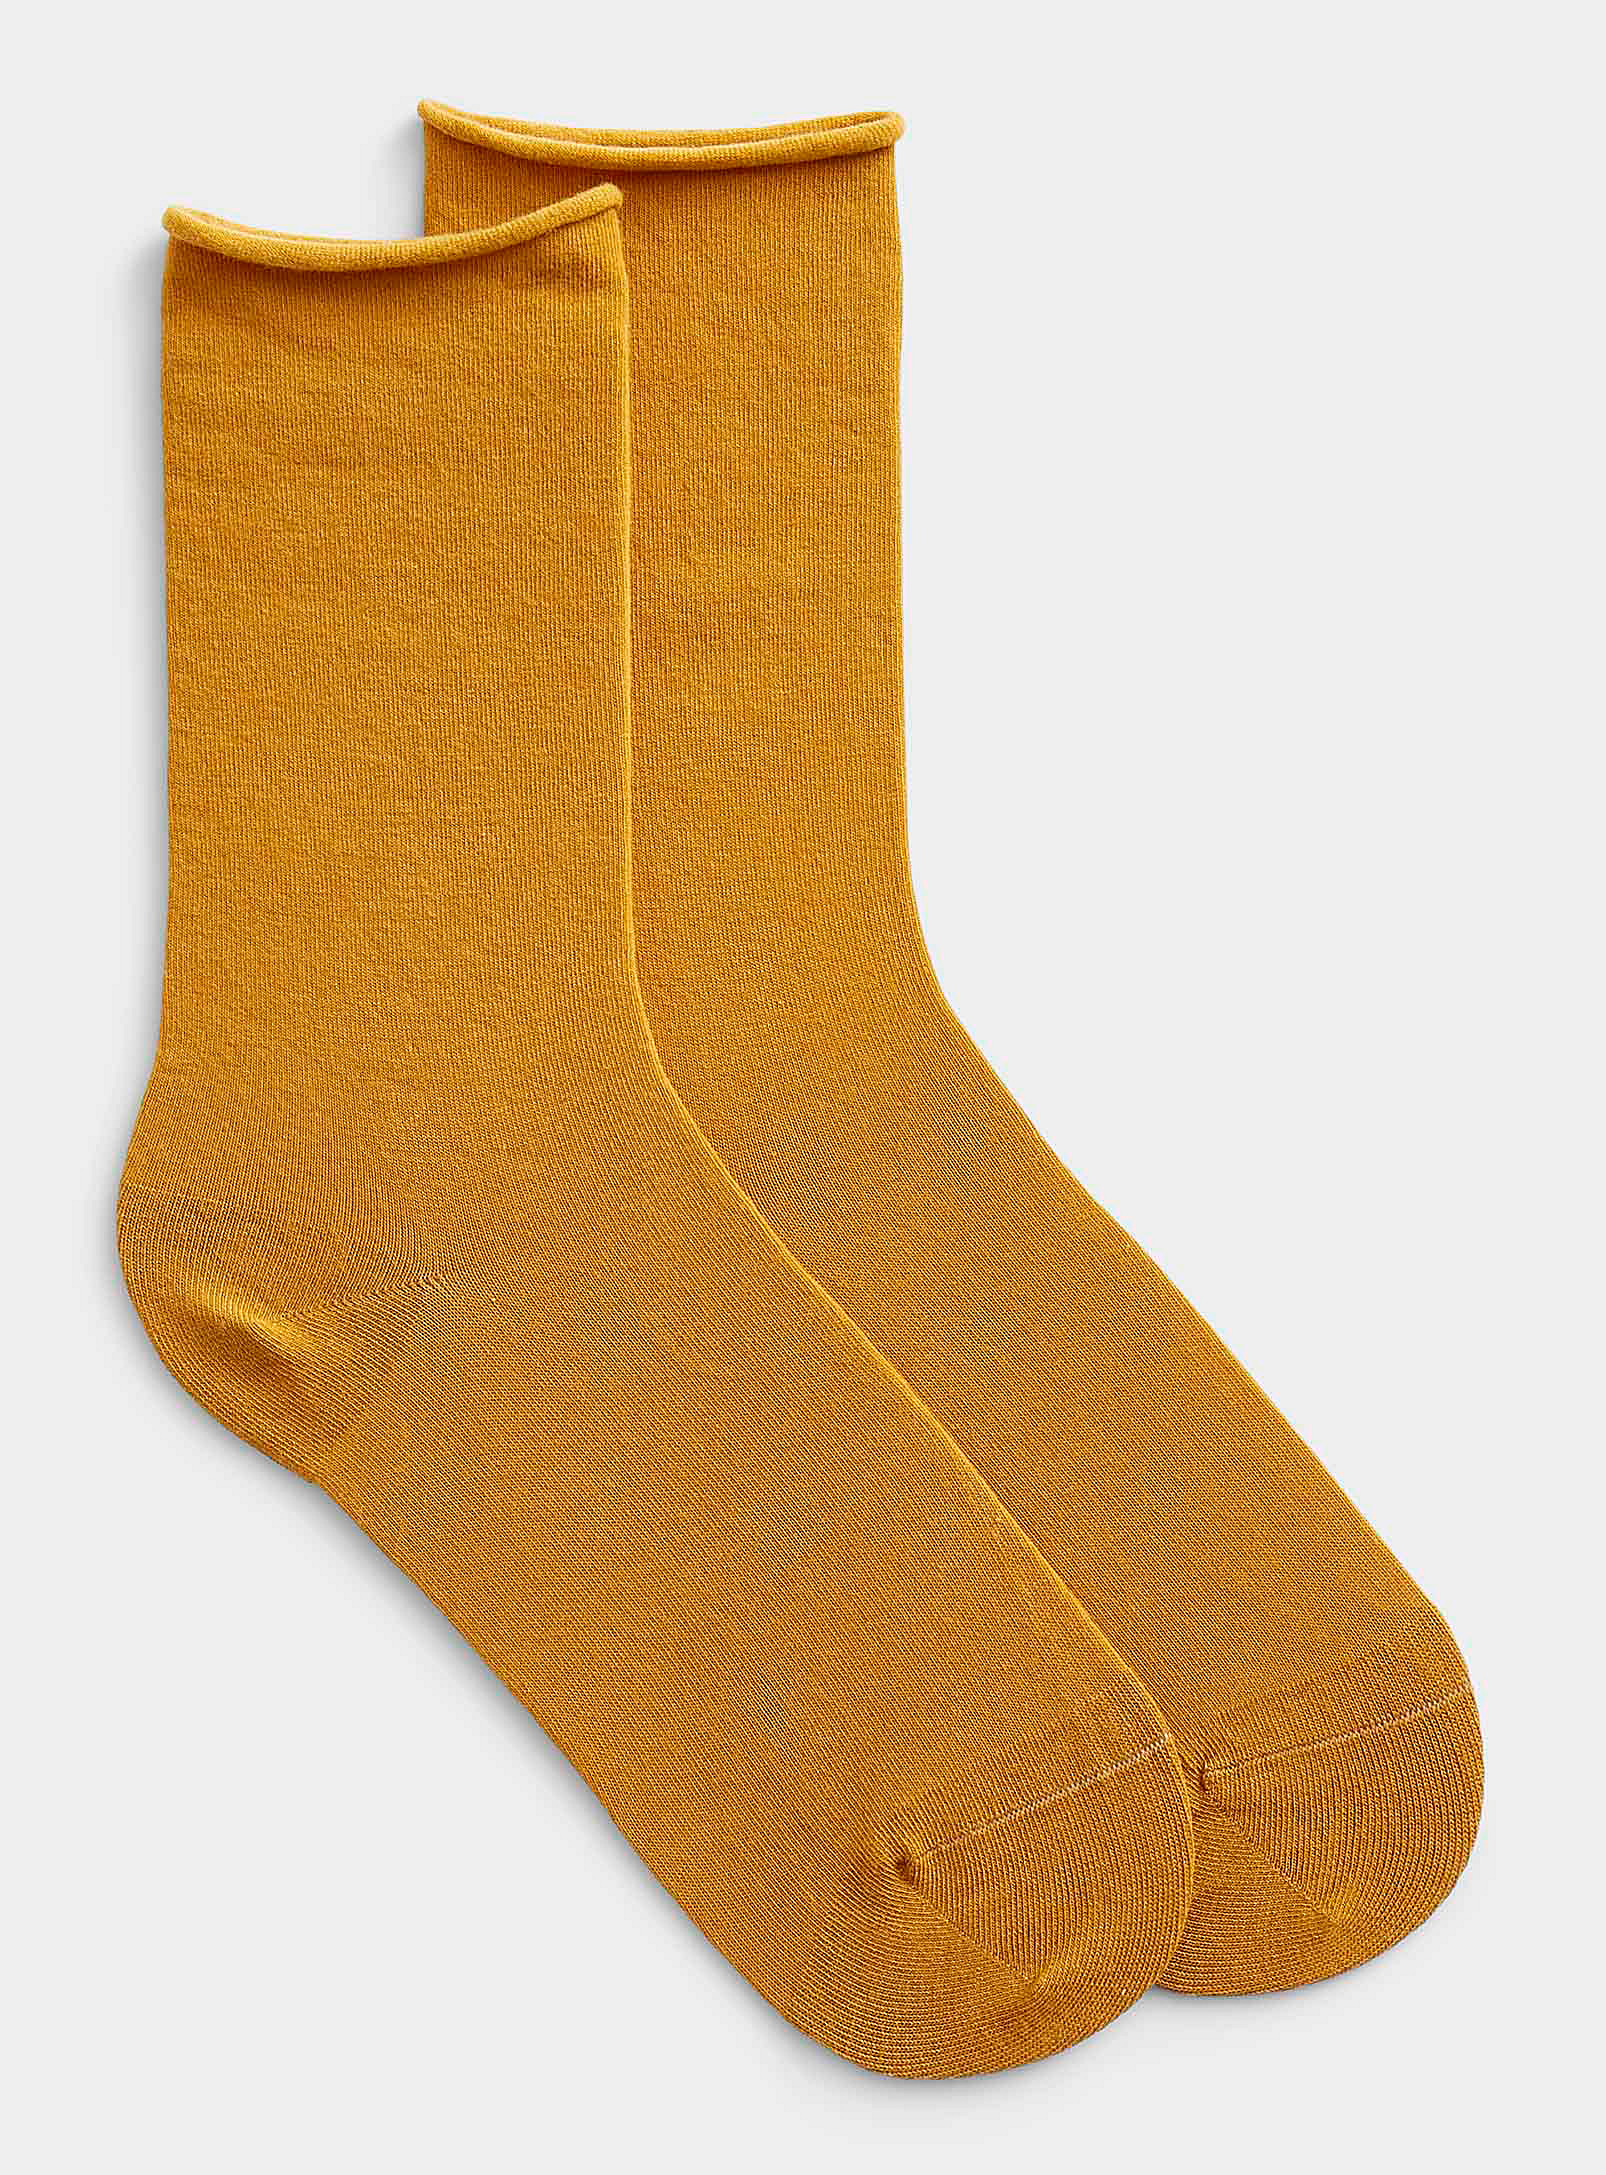 Bleuforêt Velvety Cotton Socks In Golden Yellow